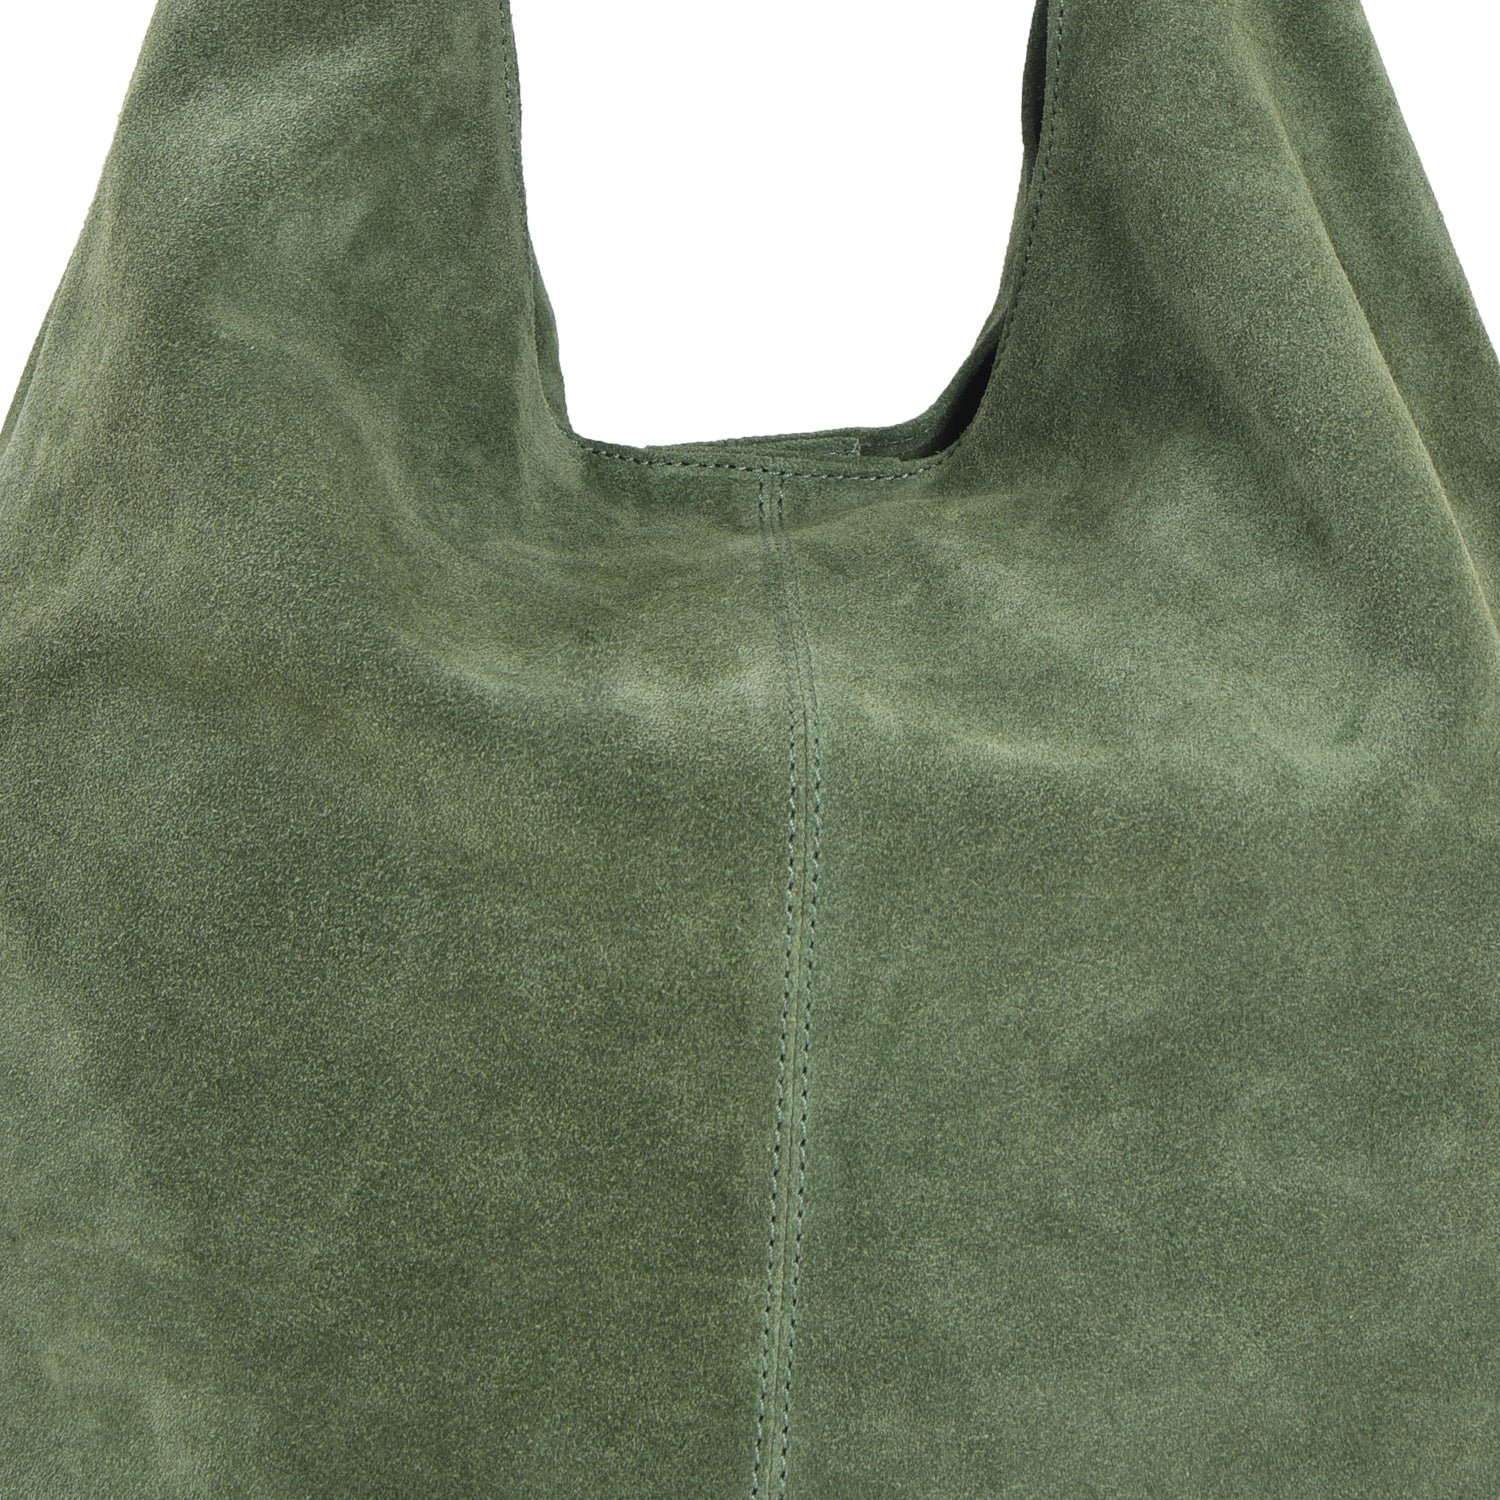 Olive Green Suede Leather Hobo Boho Shoulder Bag